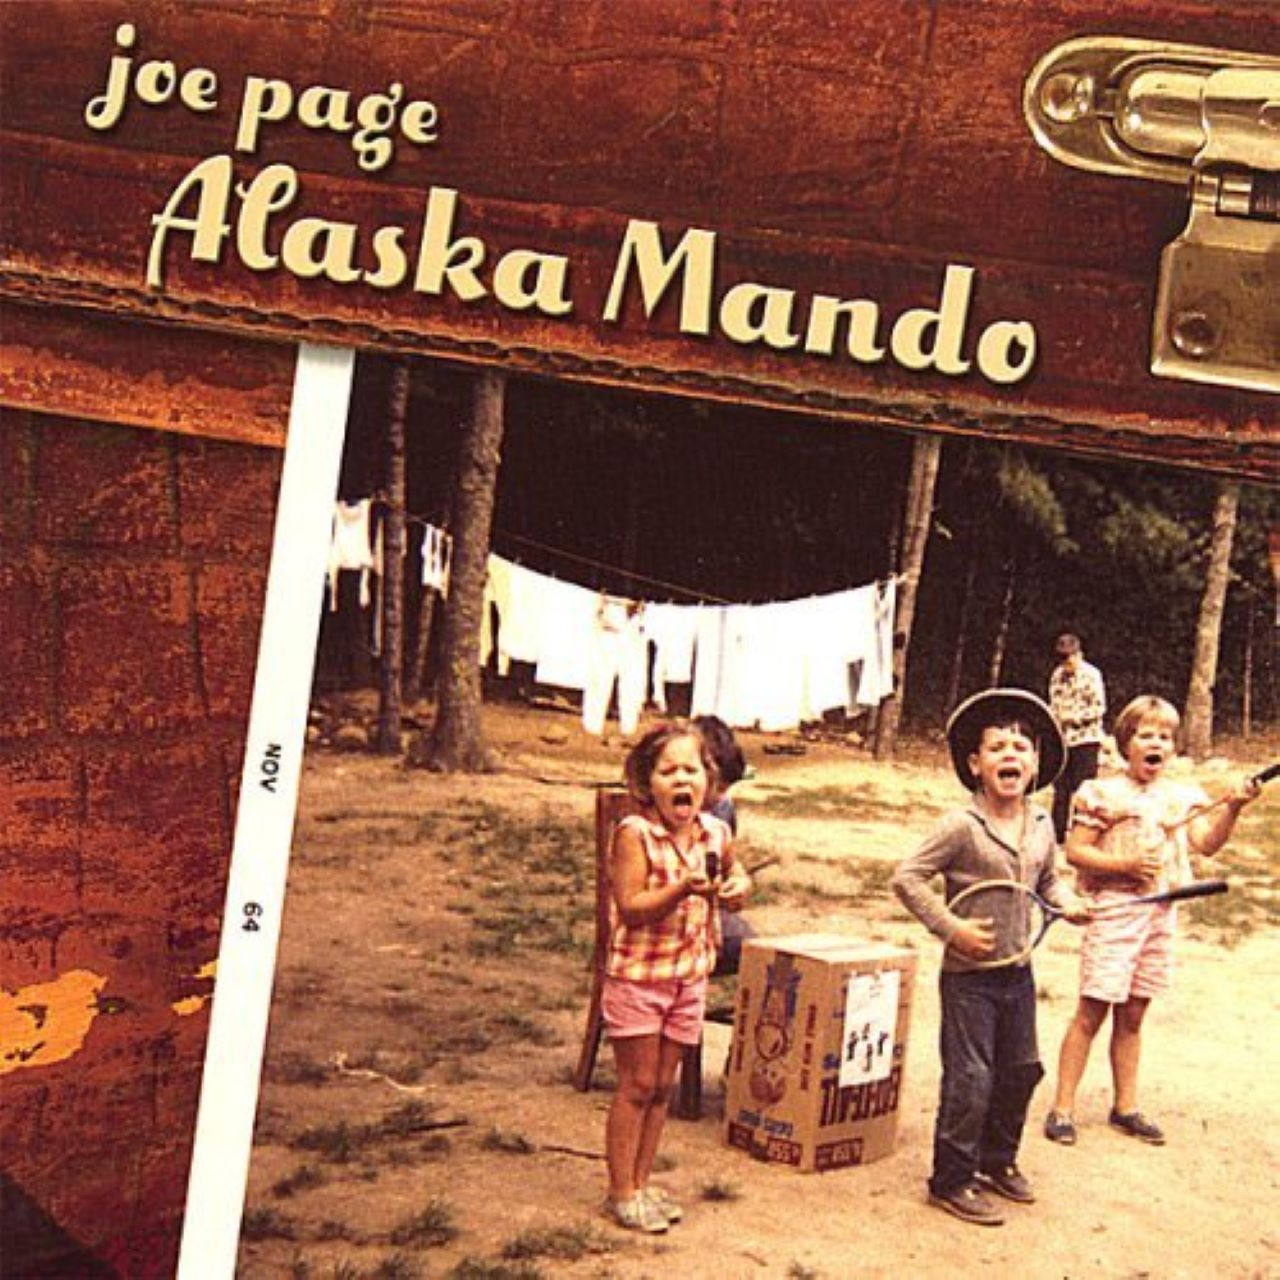 Joe Page - Alaska Mando cover album